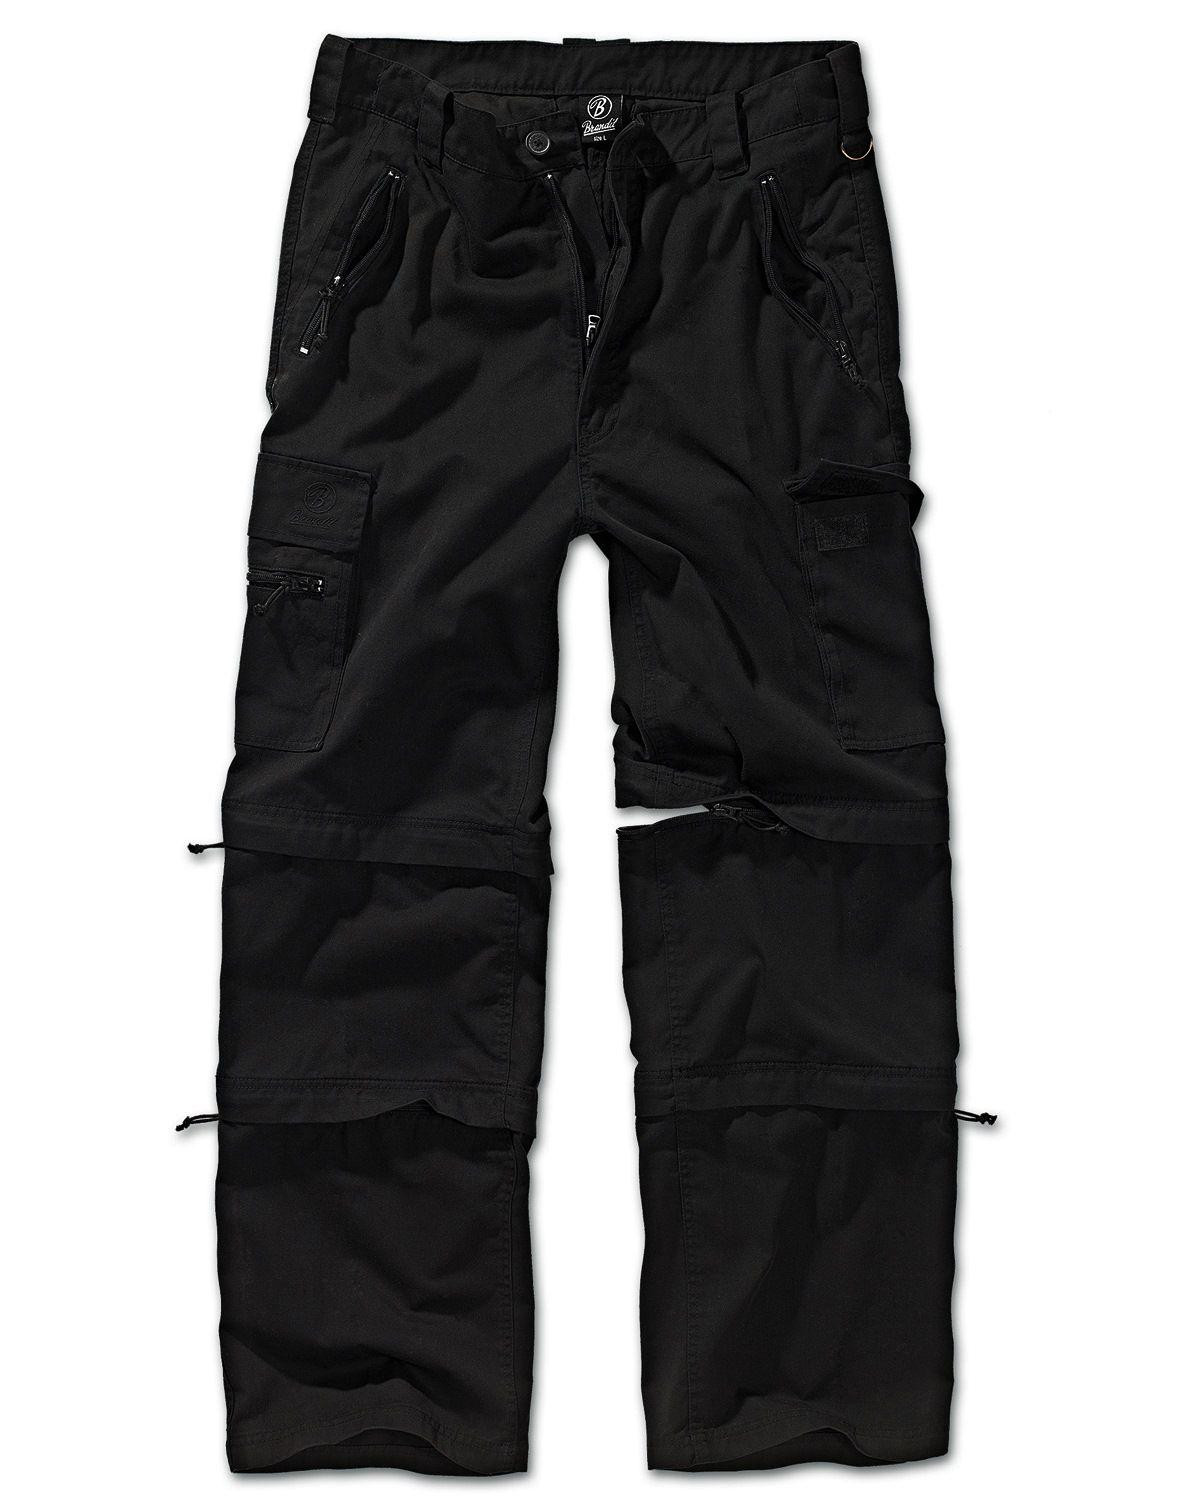 Brandit Savannah Zip Bukser (Sort, XL)